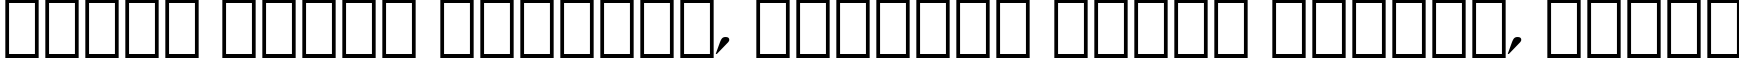 Пример написания шрифтом Latin 725 Bold Italic BT текста на белорусском